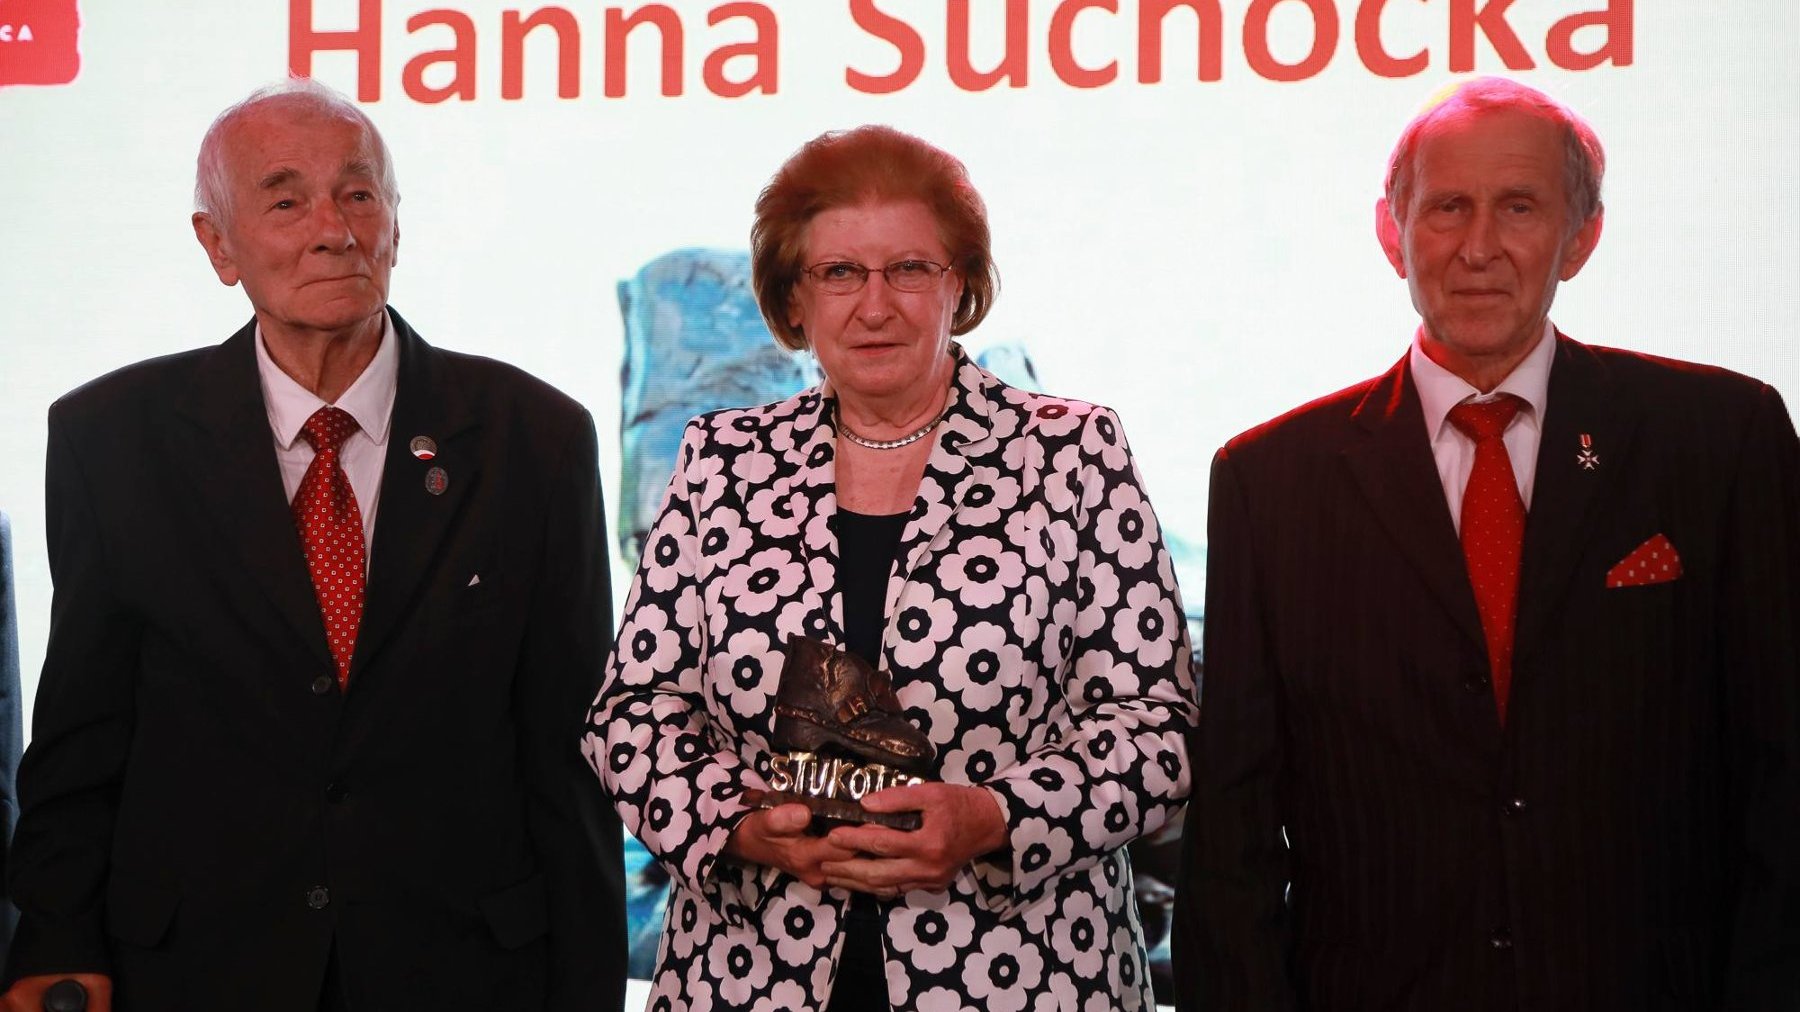 Na zdjęciu od lewej: Jerzy Majrzchak, Hanna Suchocka i Andrzej Sporny. Hanna Suchocka trzyma w rękach nagrodę Stukot'56. Mężczyźni sa ubrani w czarne garnitury, białe koszule i czerwone krawaty. Kobieta jest ubrana w czarną suknie i czarną marynarkę z printem białych kwiatów.